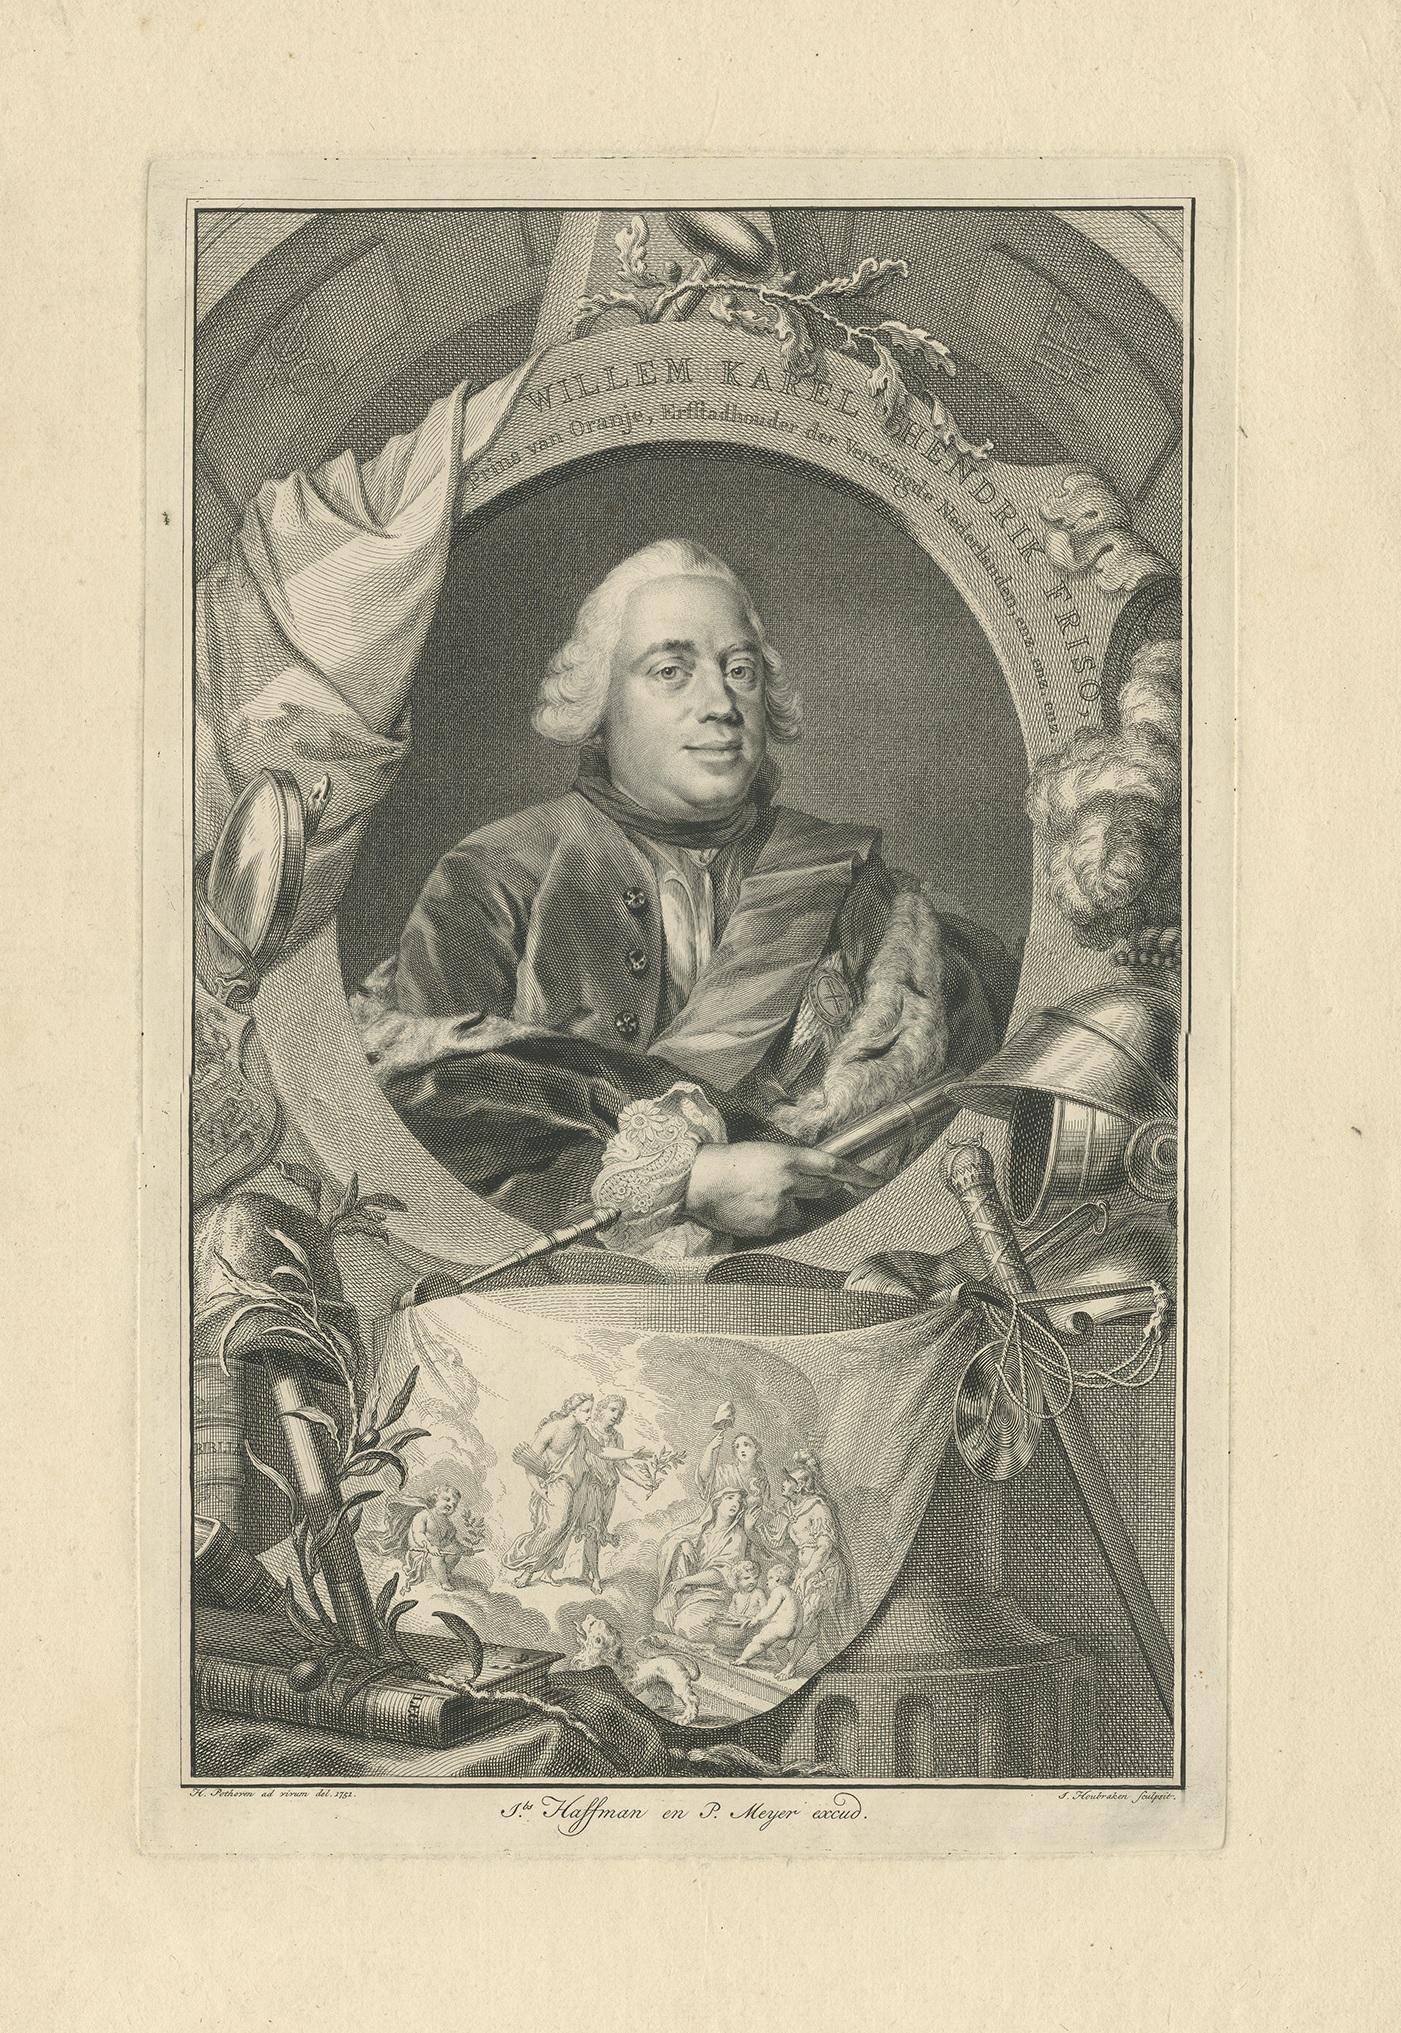 Antique portrait titled 'Willem Karel Hendrik Friso, Prins van Oranje, Erfstadhouder der Vereenigde Nederlanden enz. enz. enz'. Portrait of William Charles Henry Friso of Orange.